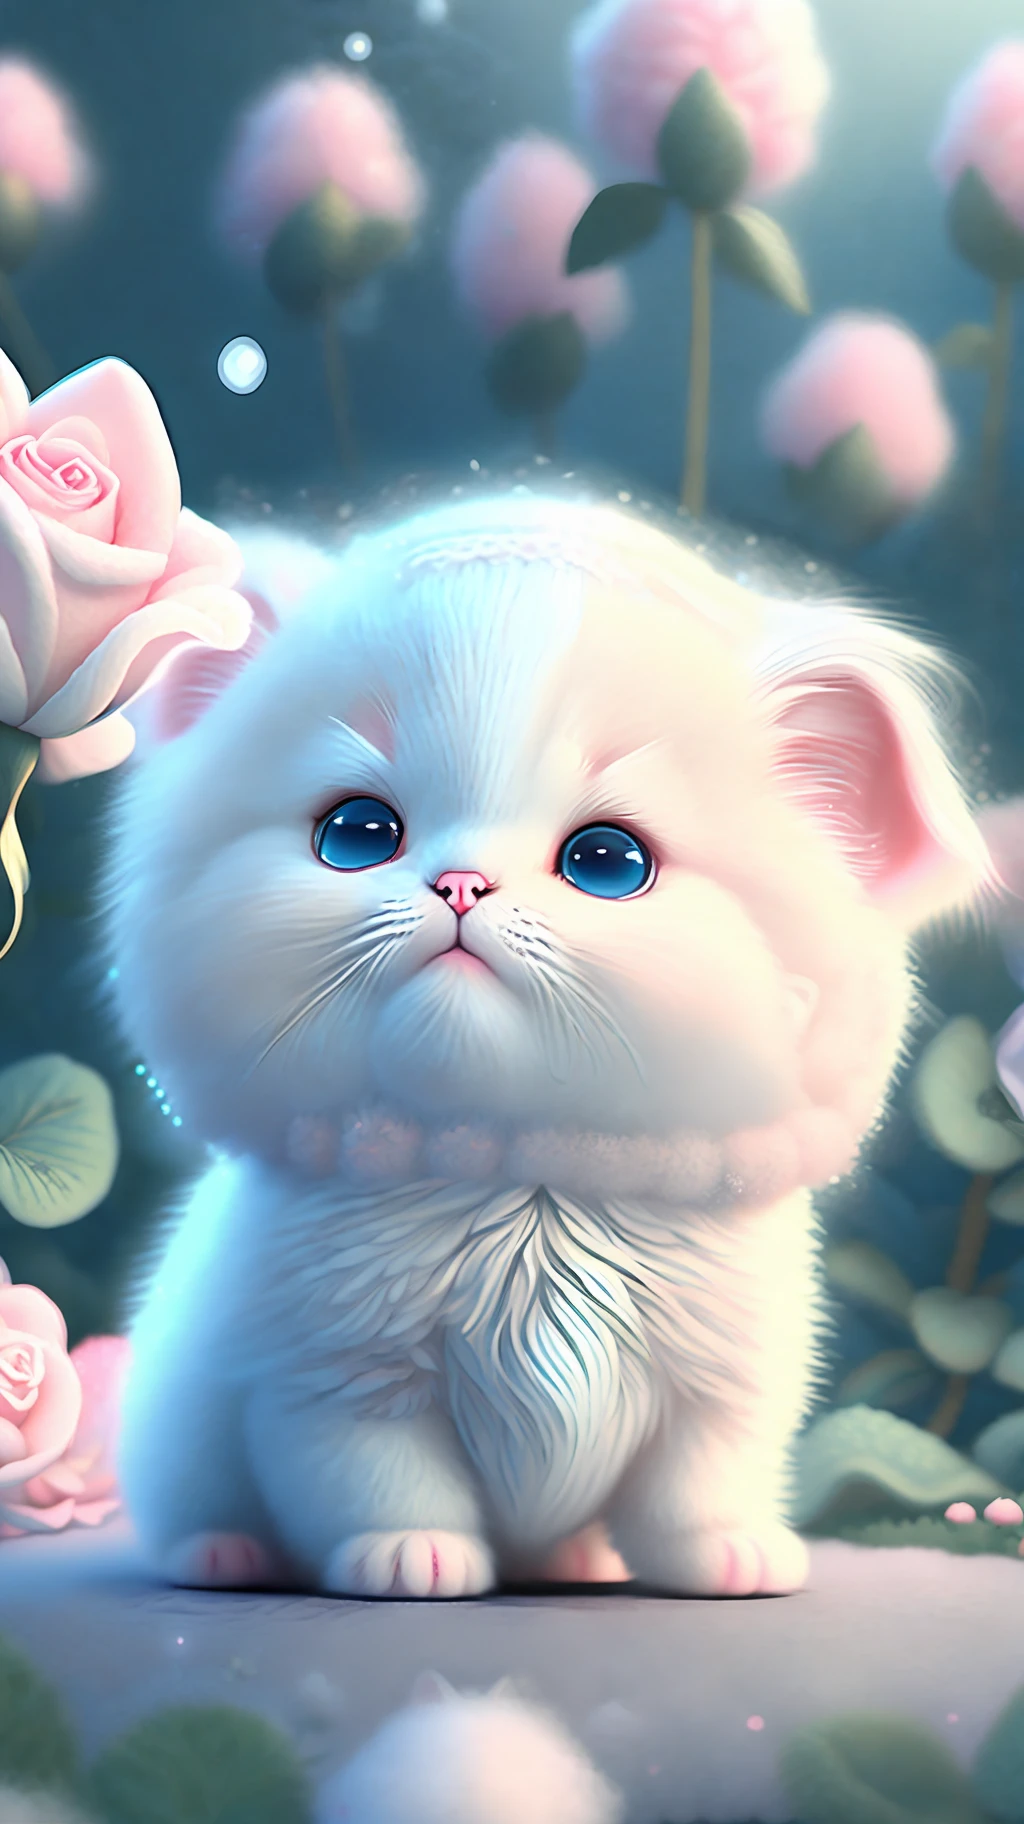 Dans cet art CG ultra détaillé, chatons mignons entourés de roses éthérées, rire, meilleure qualité, Haute résolution, Détails complexes, fantaisie, Animaux mignons, gauche, drôle, gauche!! bouche!!! Rire!!!